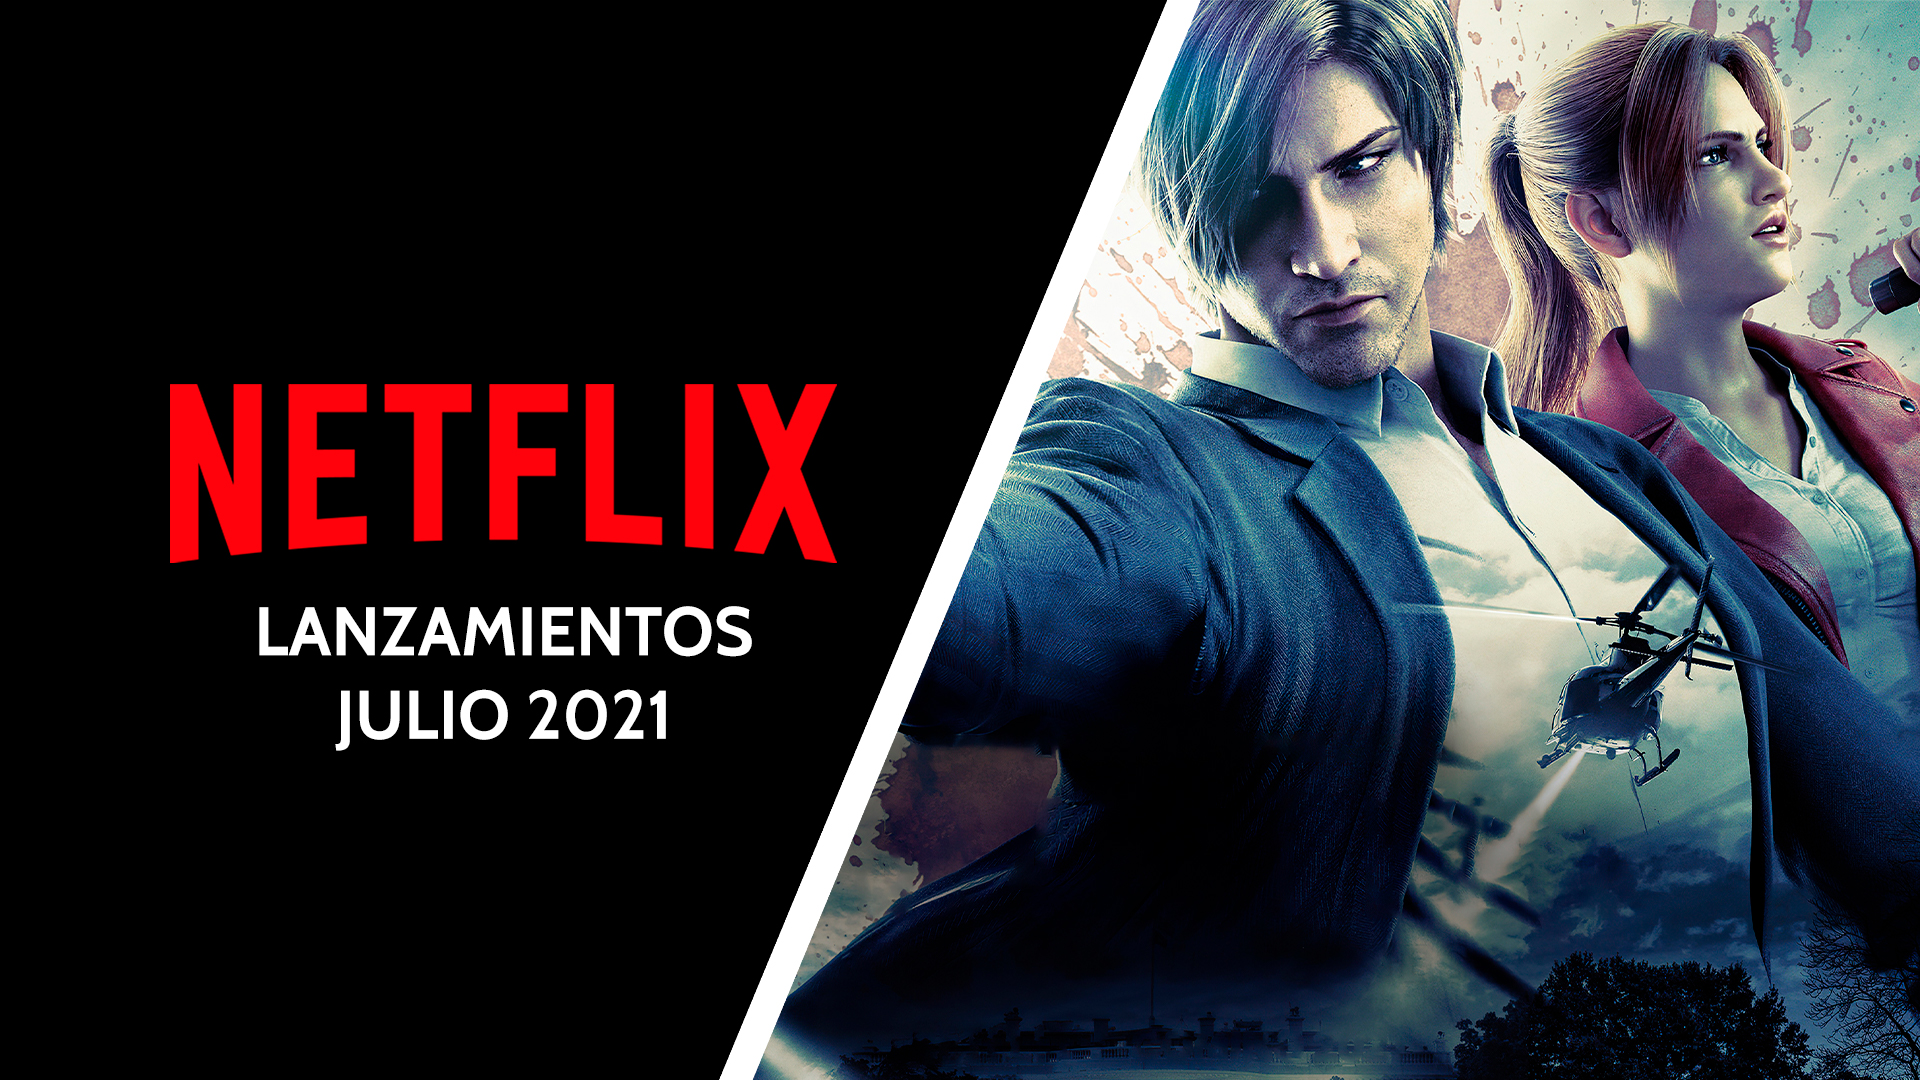 Netflix julio 2021 Impulsogeek